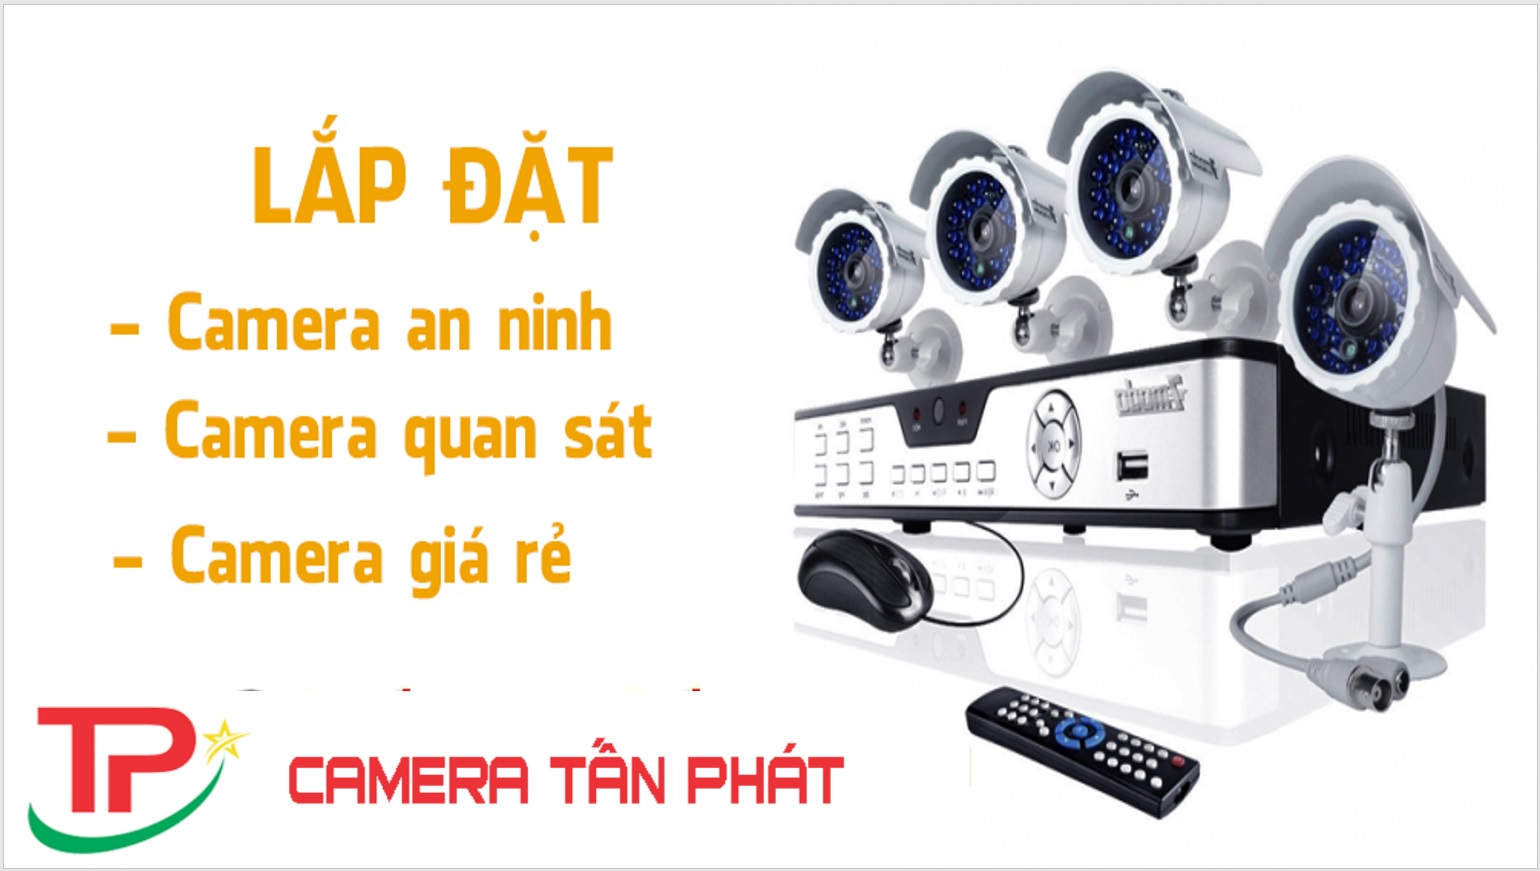 Camera Tan Phat